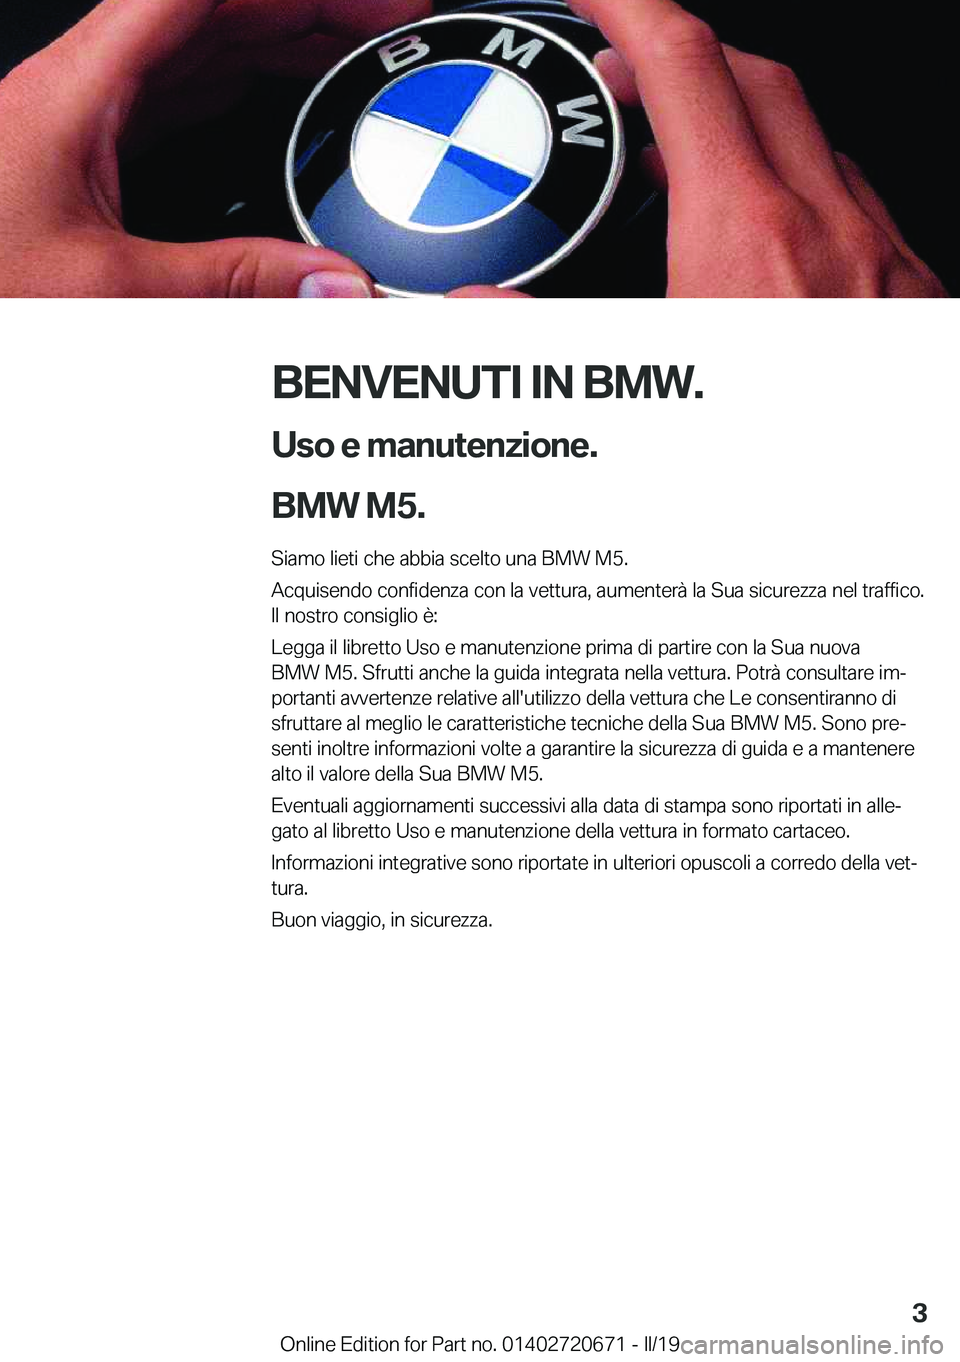 BMW M5 2019  Libretti Di Uso E manutenzione (in Italian) �B�E�N�V�E�N�U�T�I��I�N��B�M�W�.�U�s�o��e��m�a�n�u�t�e�n�z�i�o�n�e�.
�B�M�W��M�5�.
�S�i�a�m�o��l�i�e�t�i��c�h�e��a�b�b�i�a��s�c�e�l�t�o��u�n�a��B�M�W��M�5�.
�A�c�q�u�i�s�e�n�d�o��c�o�n�f�